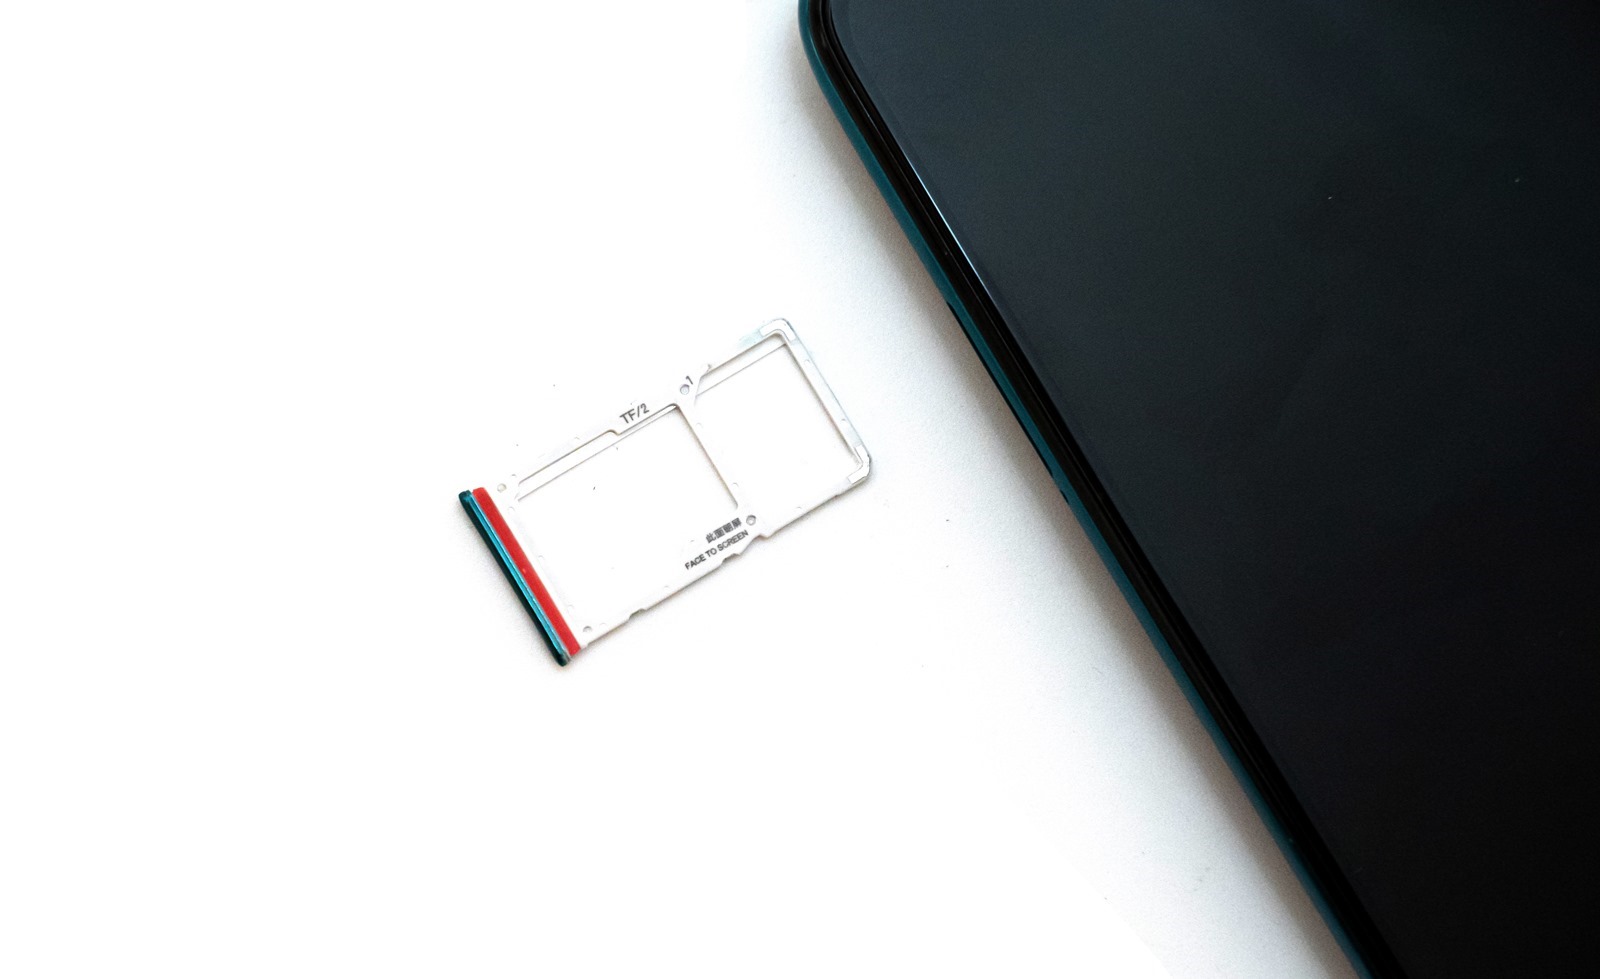 性價比之外這次強調拍照和性能！紅米 Redmi Note 8 Pro 開箱評測 @3C 達人廖阿輝